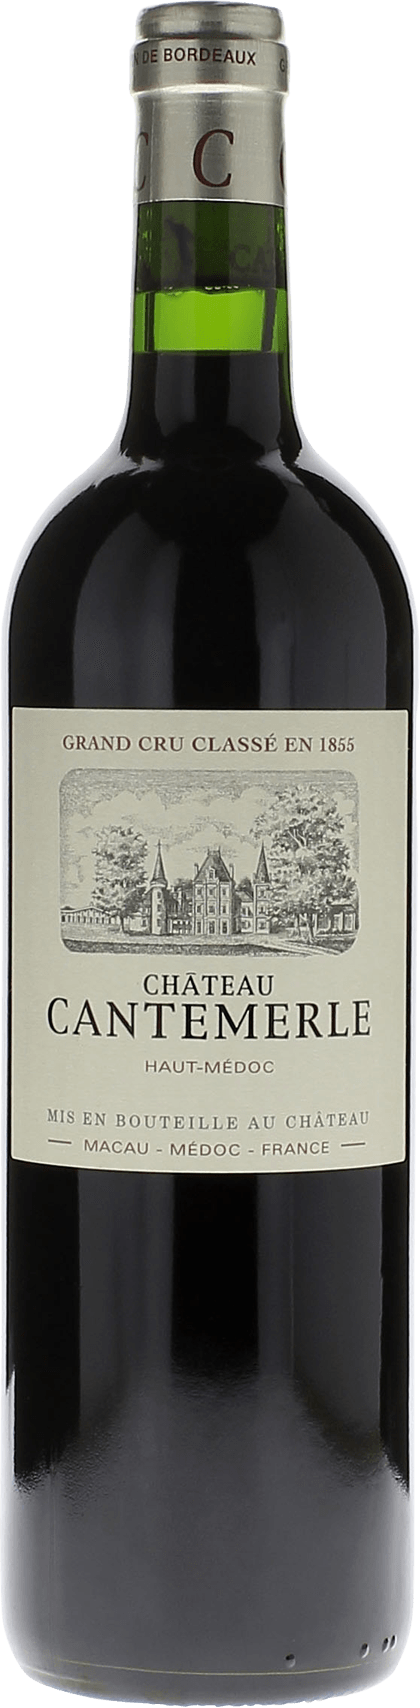 Cantemerle 1996 5me Grand cru class Haut-Mdoc, Bordeaux rouge